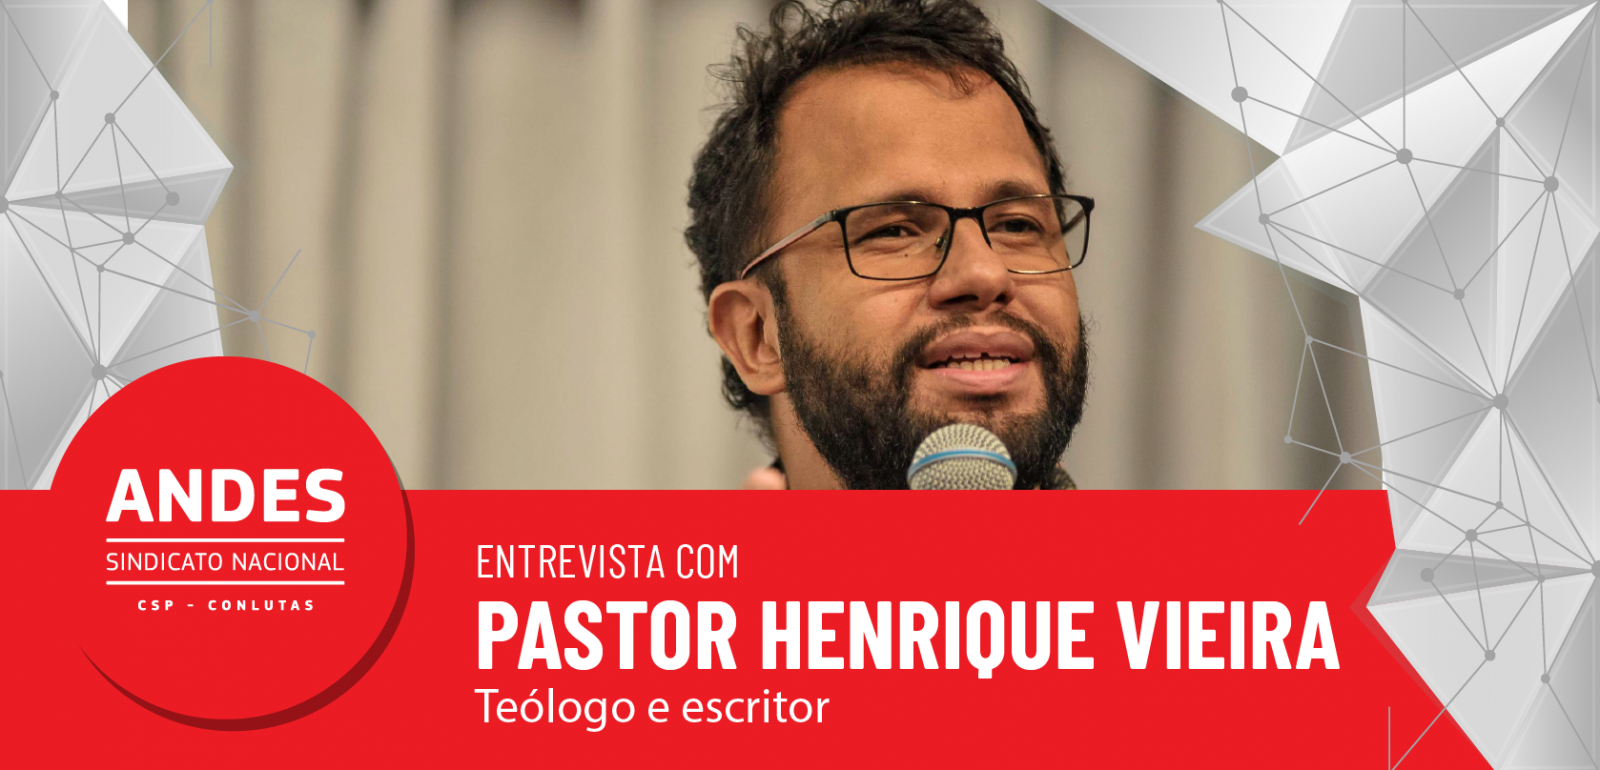 Ninguém fala pelos evangélicos”, diz Pastor Henrique Vieira